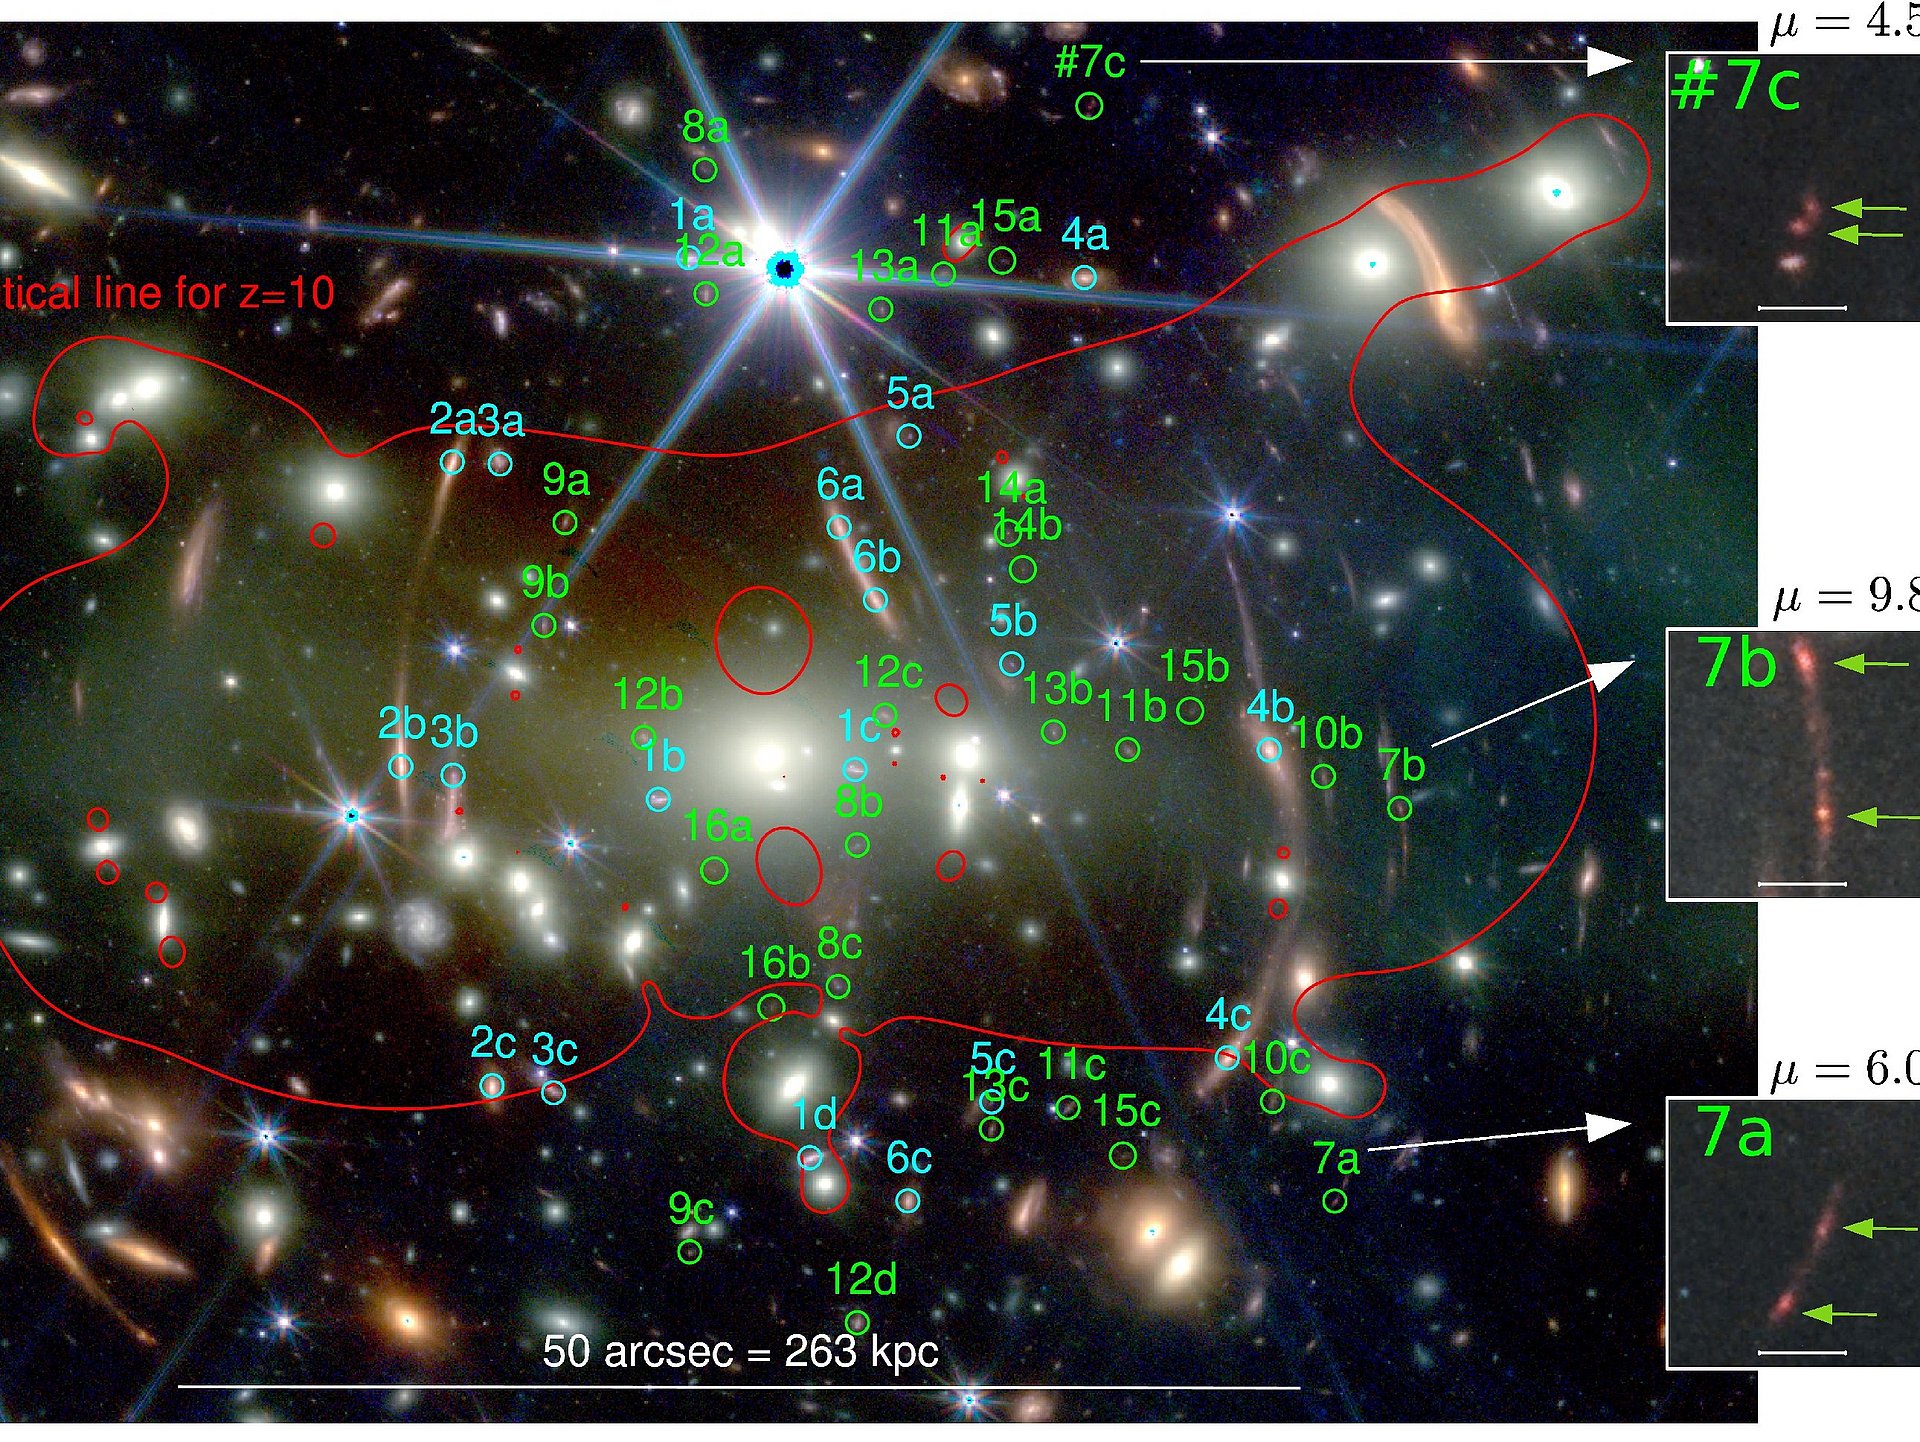 In diesem Bild sind die Mehrfahrbilder der Hintergrundbilder nummeriert. Dabei sind bereits bekannte Systeme cyan markiert, neue Mehrfach-Systeme grün. Die vergrößerten Bilder zeigen eine weit entfernte Galaxie mit strukturellen Auffälligkeiten (grüne Pfeile).